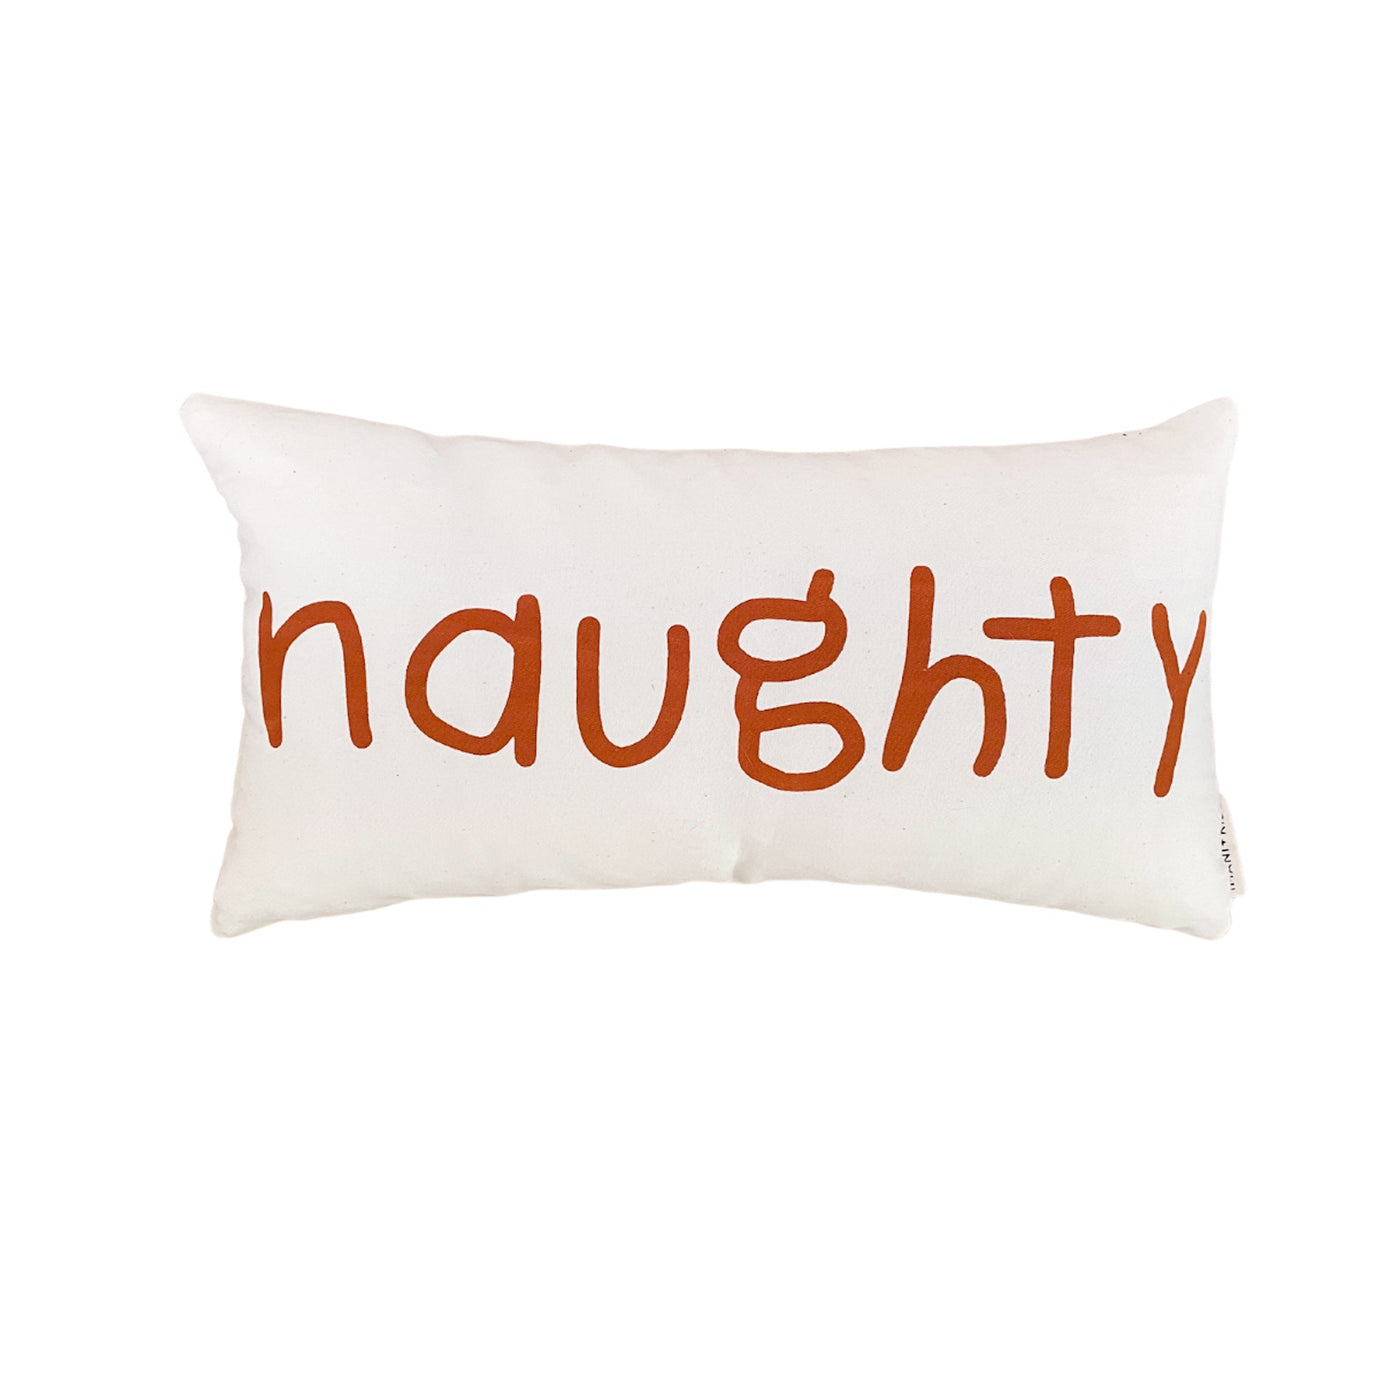 Naughty/Nice Lumbar Pillow Cover